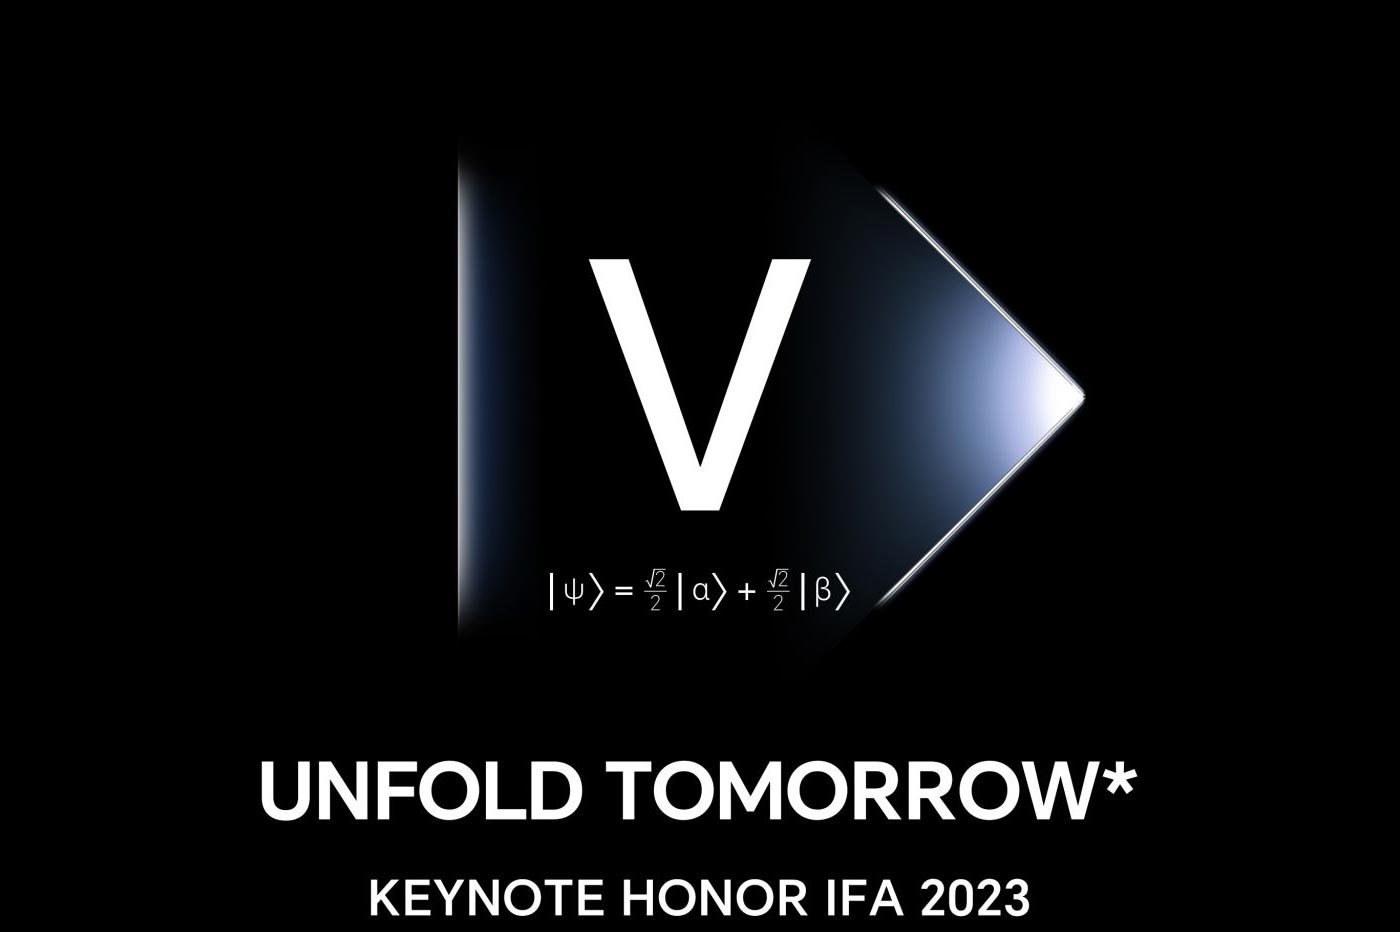 Honor IFA 2023